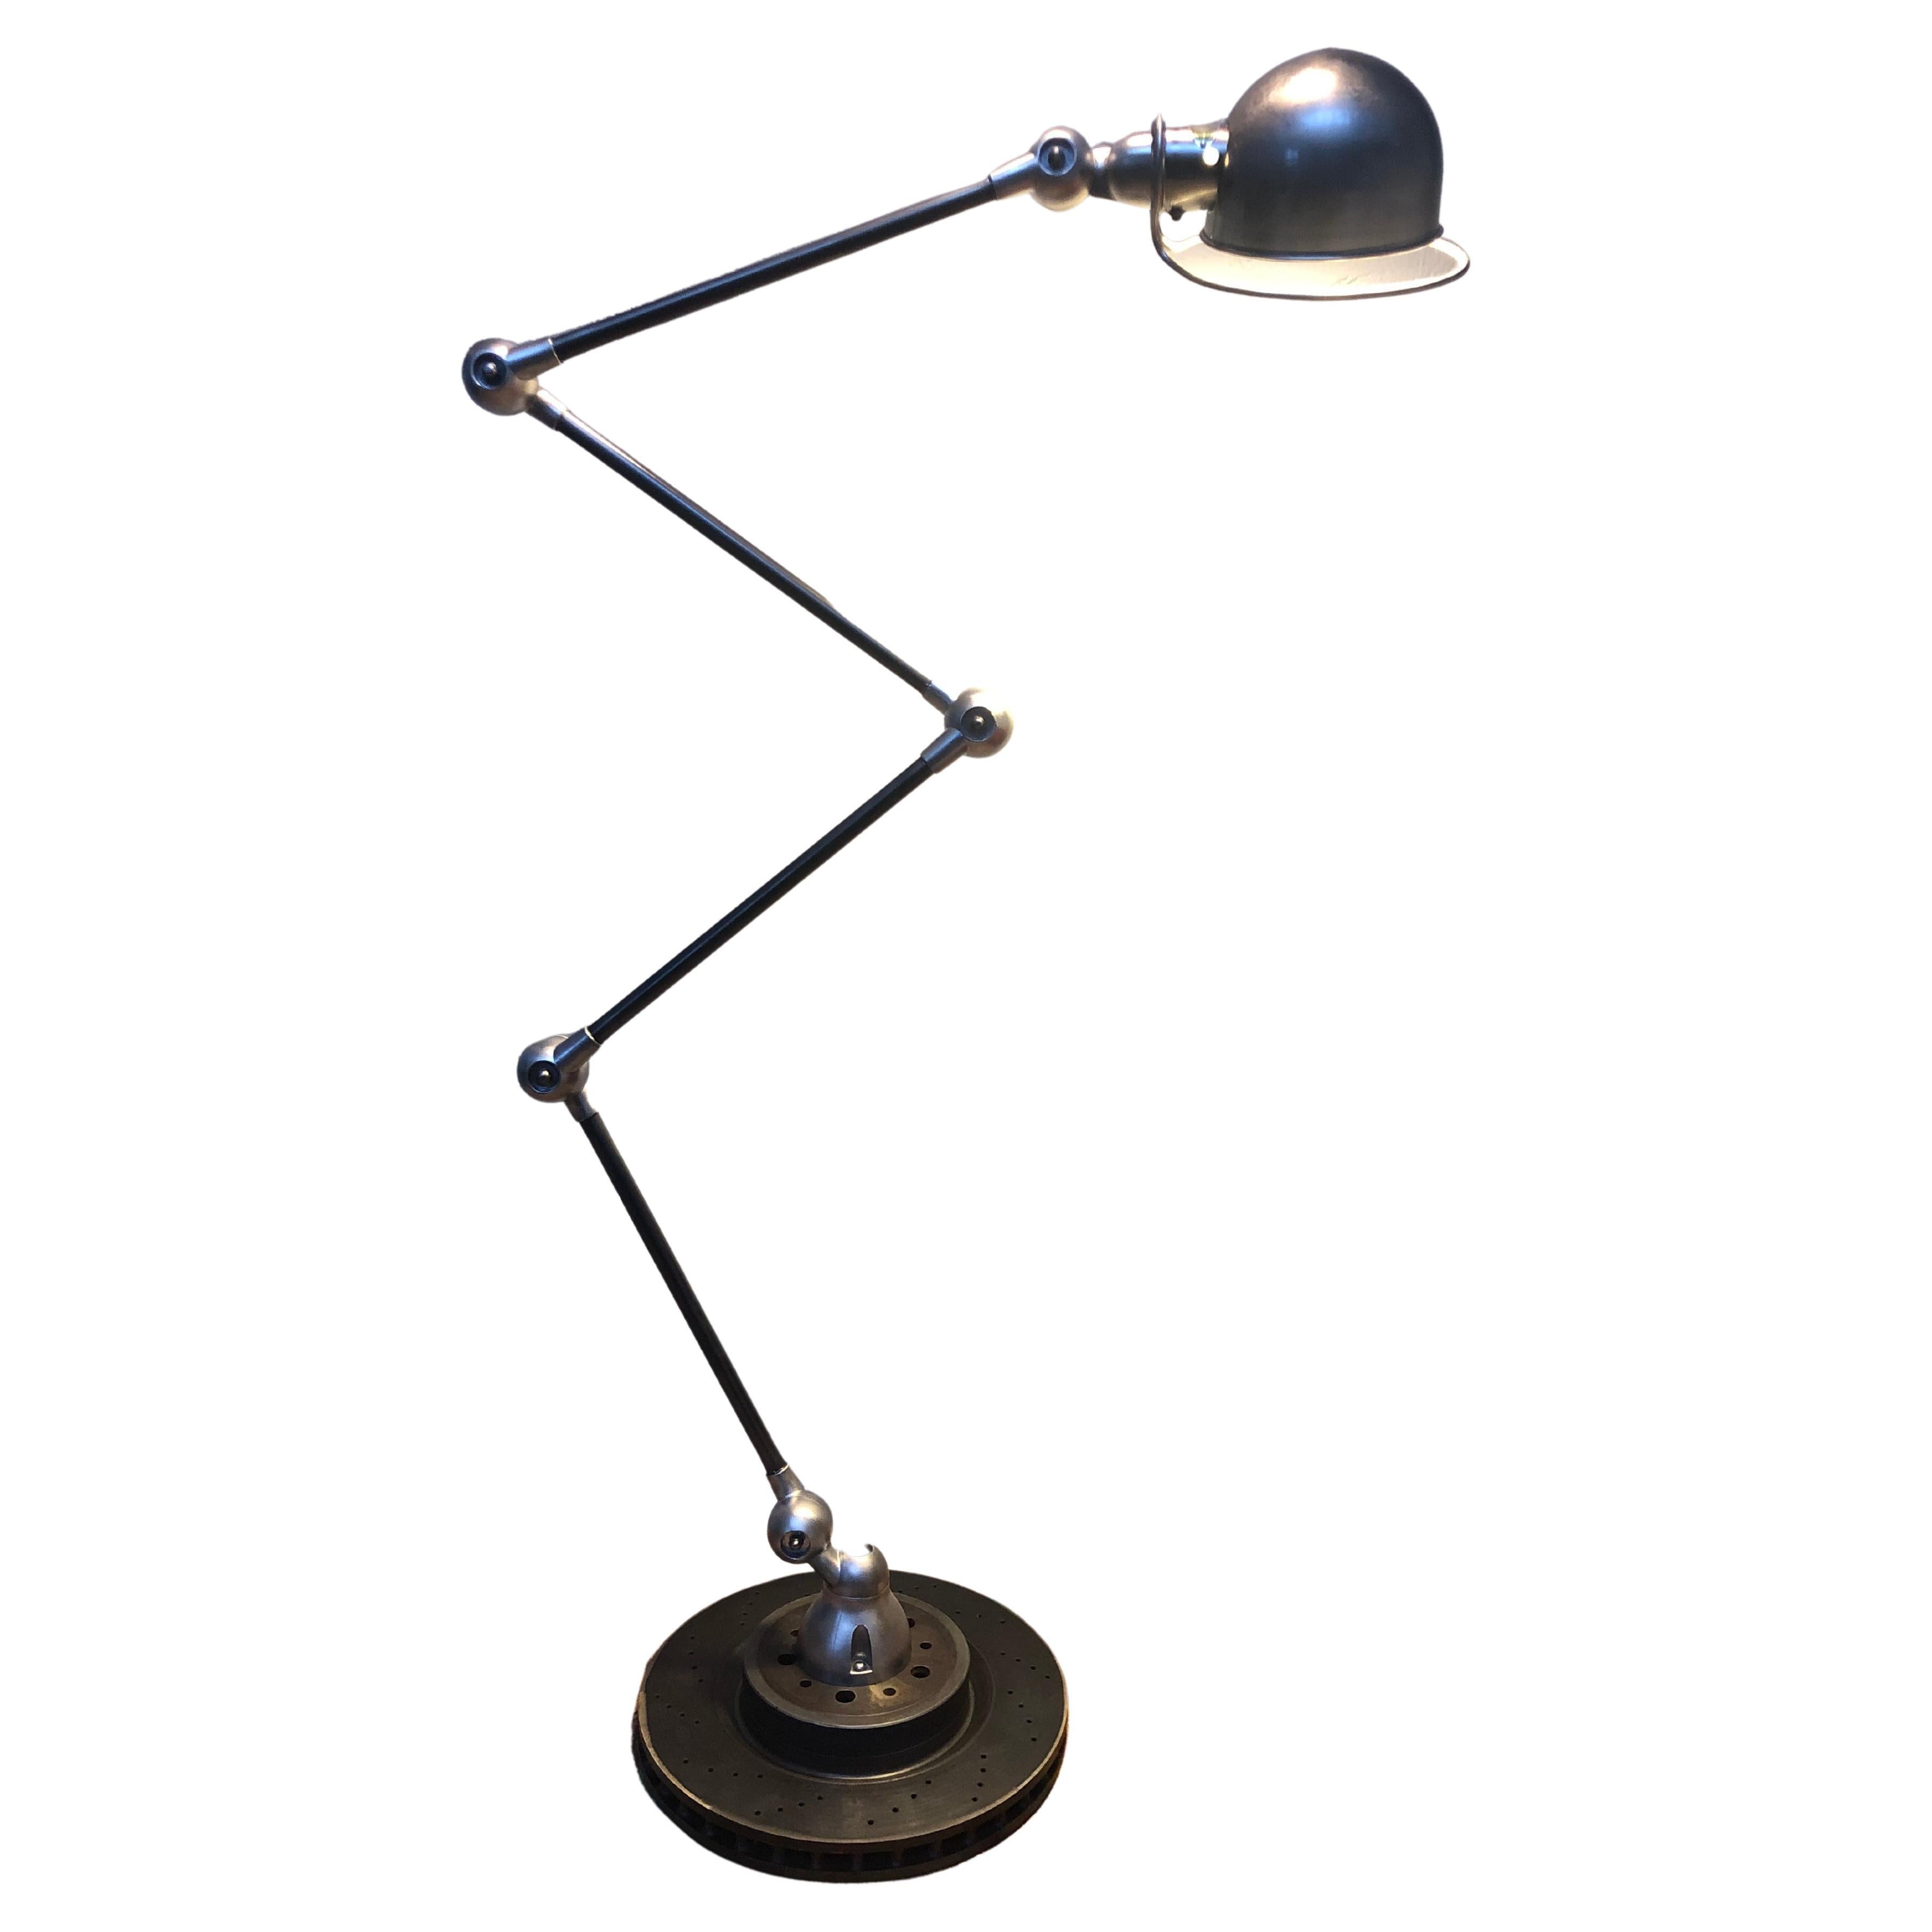 Vintage Jielde Industrial Floor Lamp